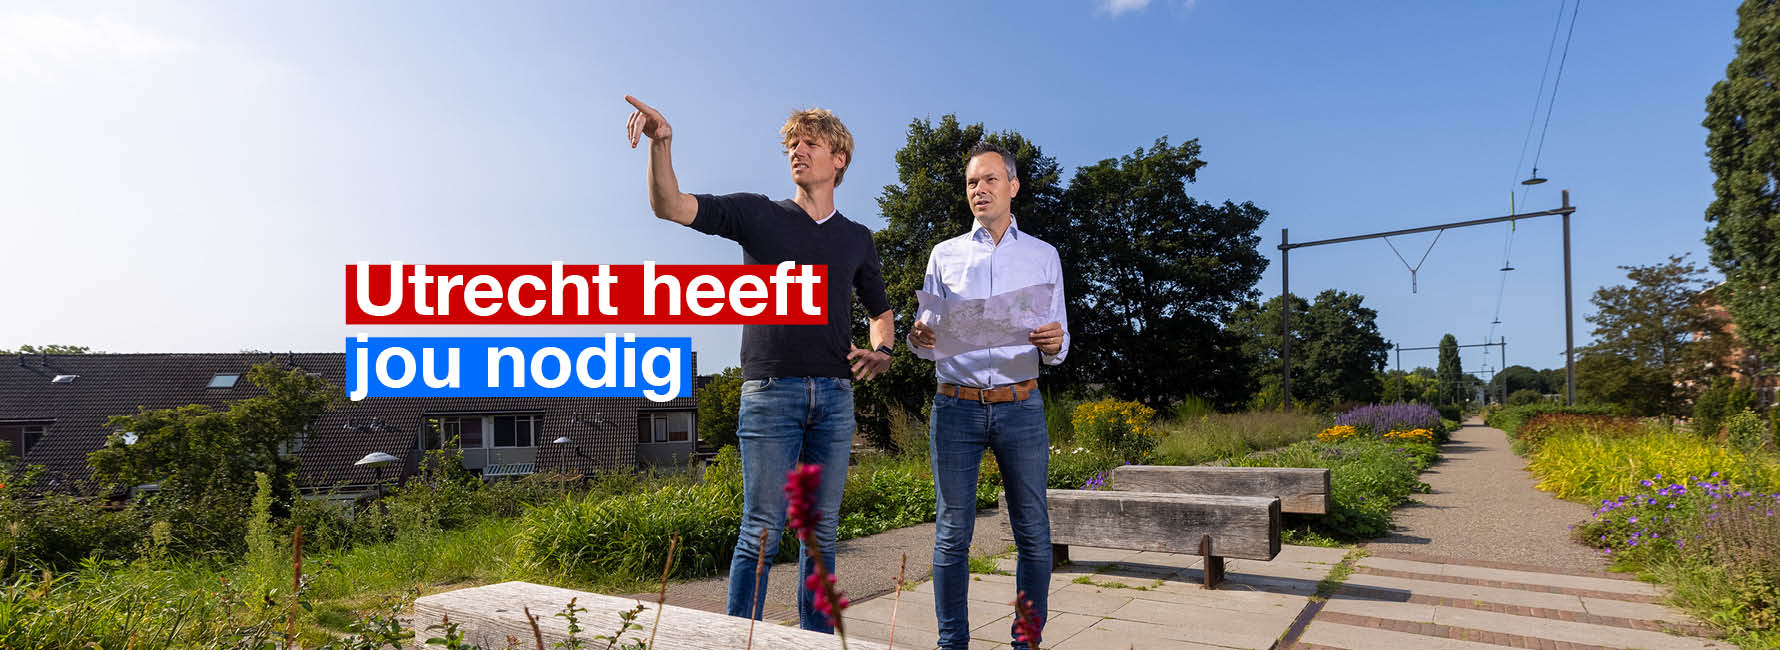 Twee mensen staan in een park met een kaart. In beeld staat de tekst Utrecht heeft jou nodig.